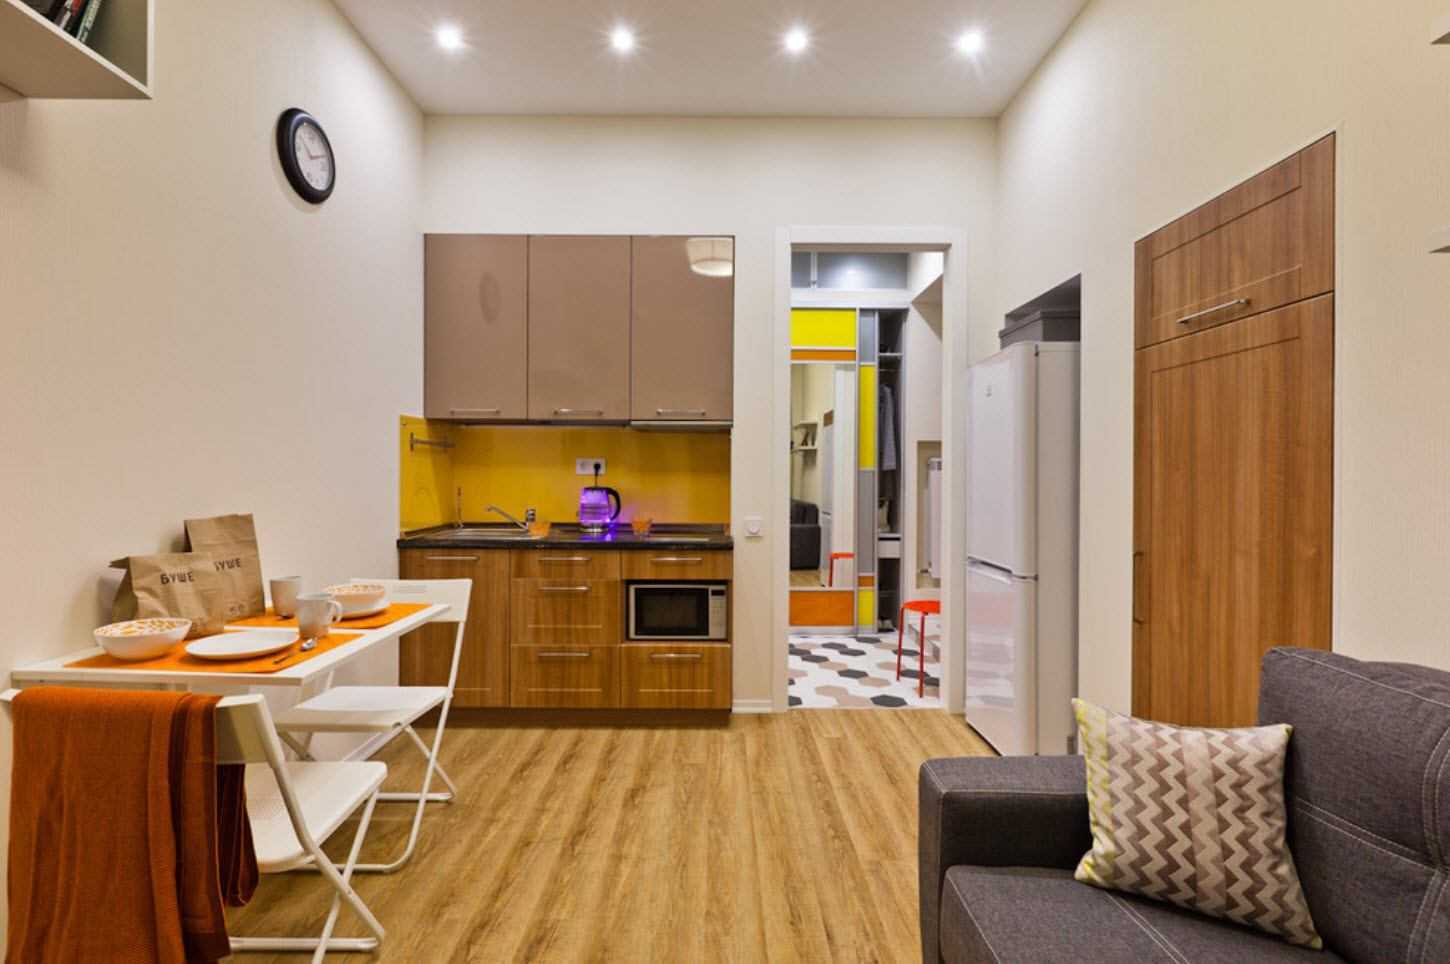 Дизайн студии 23 кв м: интерьер и планировка современной квартиры с фото